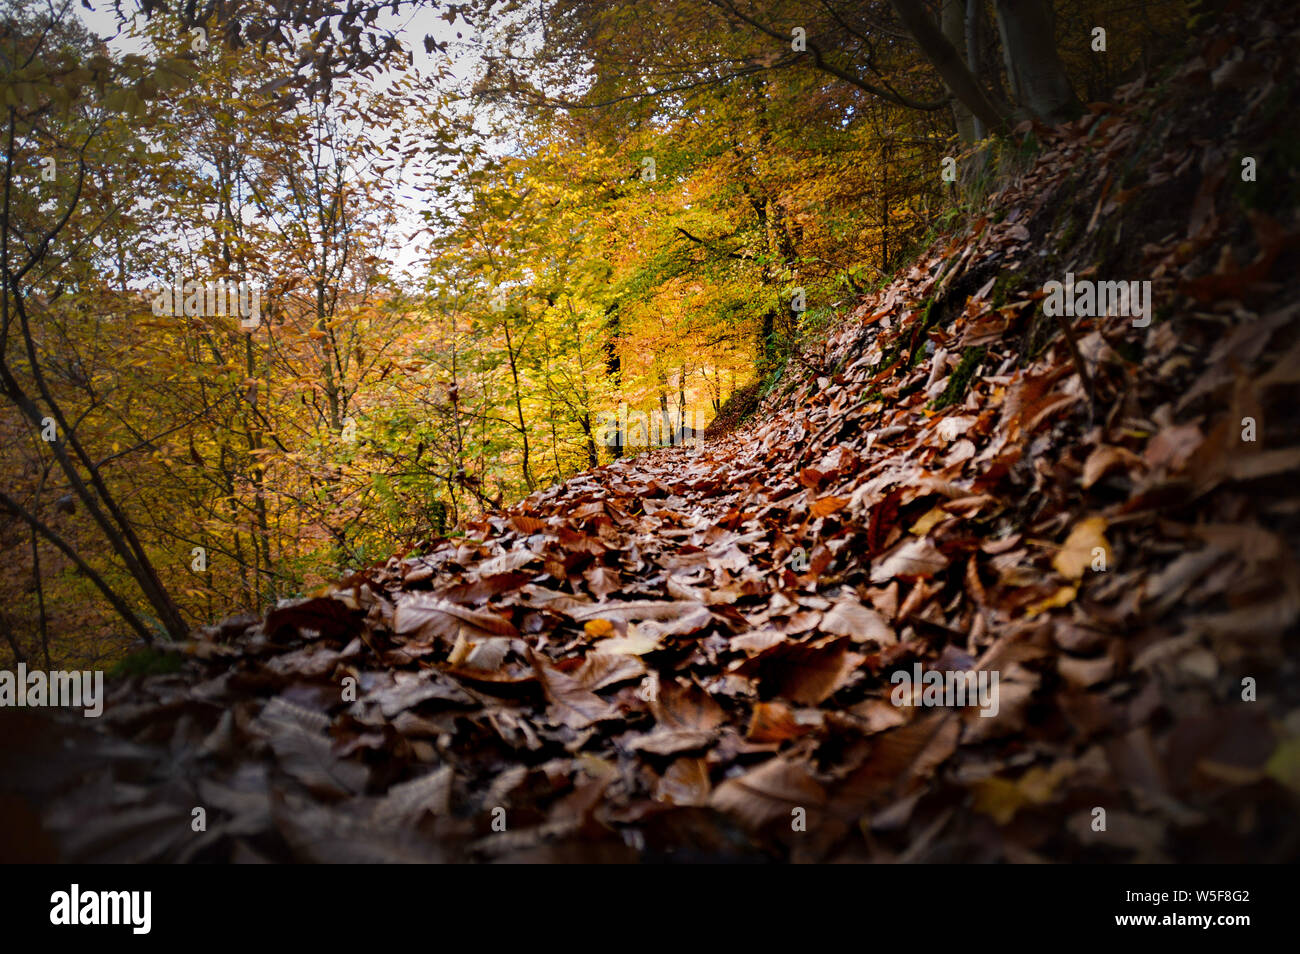 Changer de couleurs d'automne dans les arbres forestiers en Bernkastel-kues, Allemagne signifie lele concept de Changement et continuité de la vie Banque D'Images